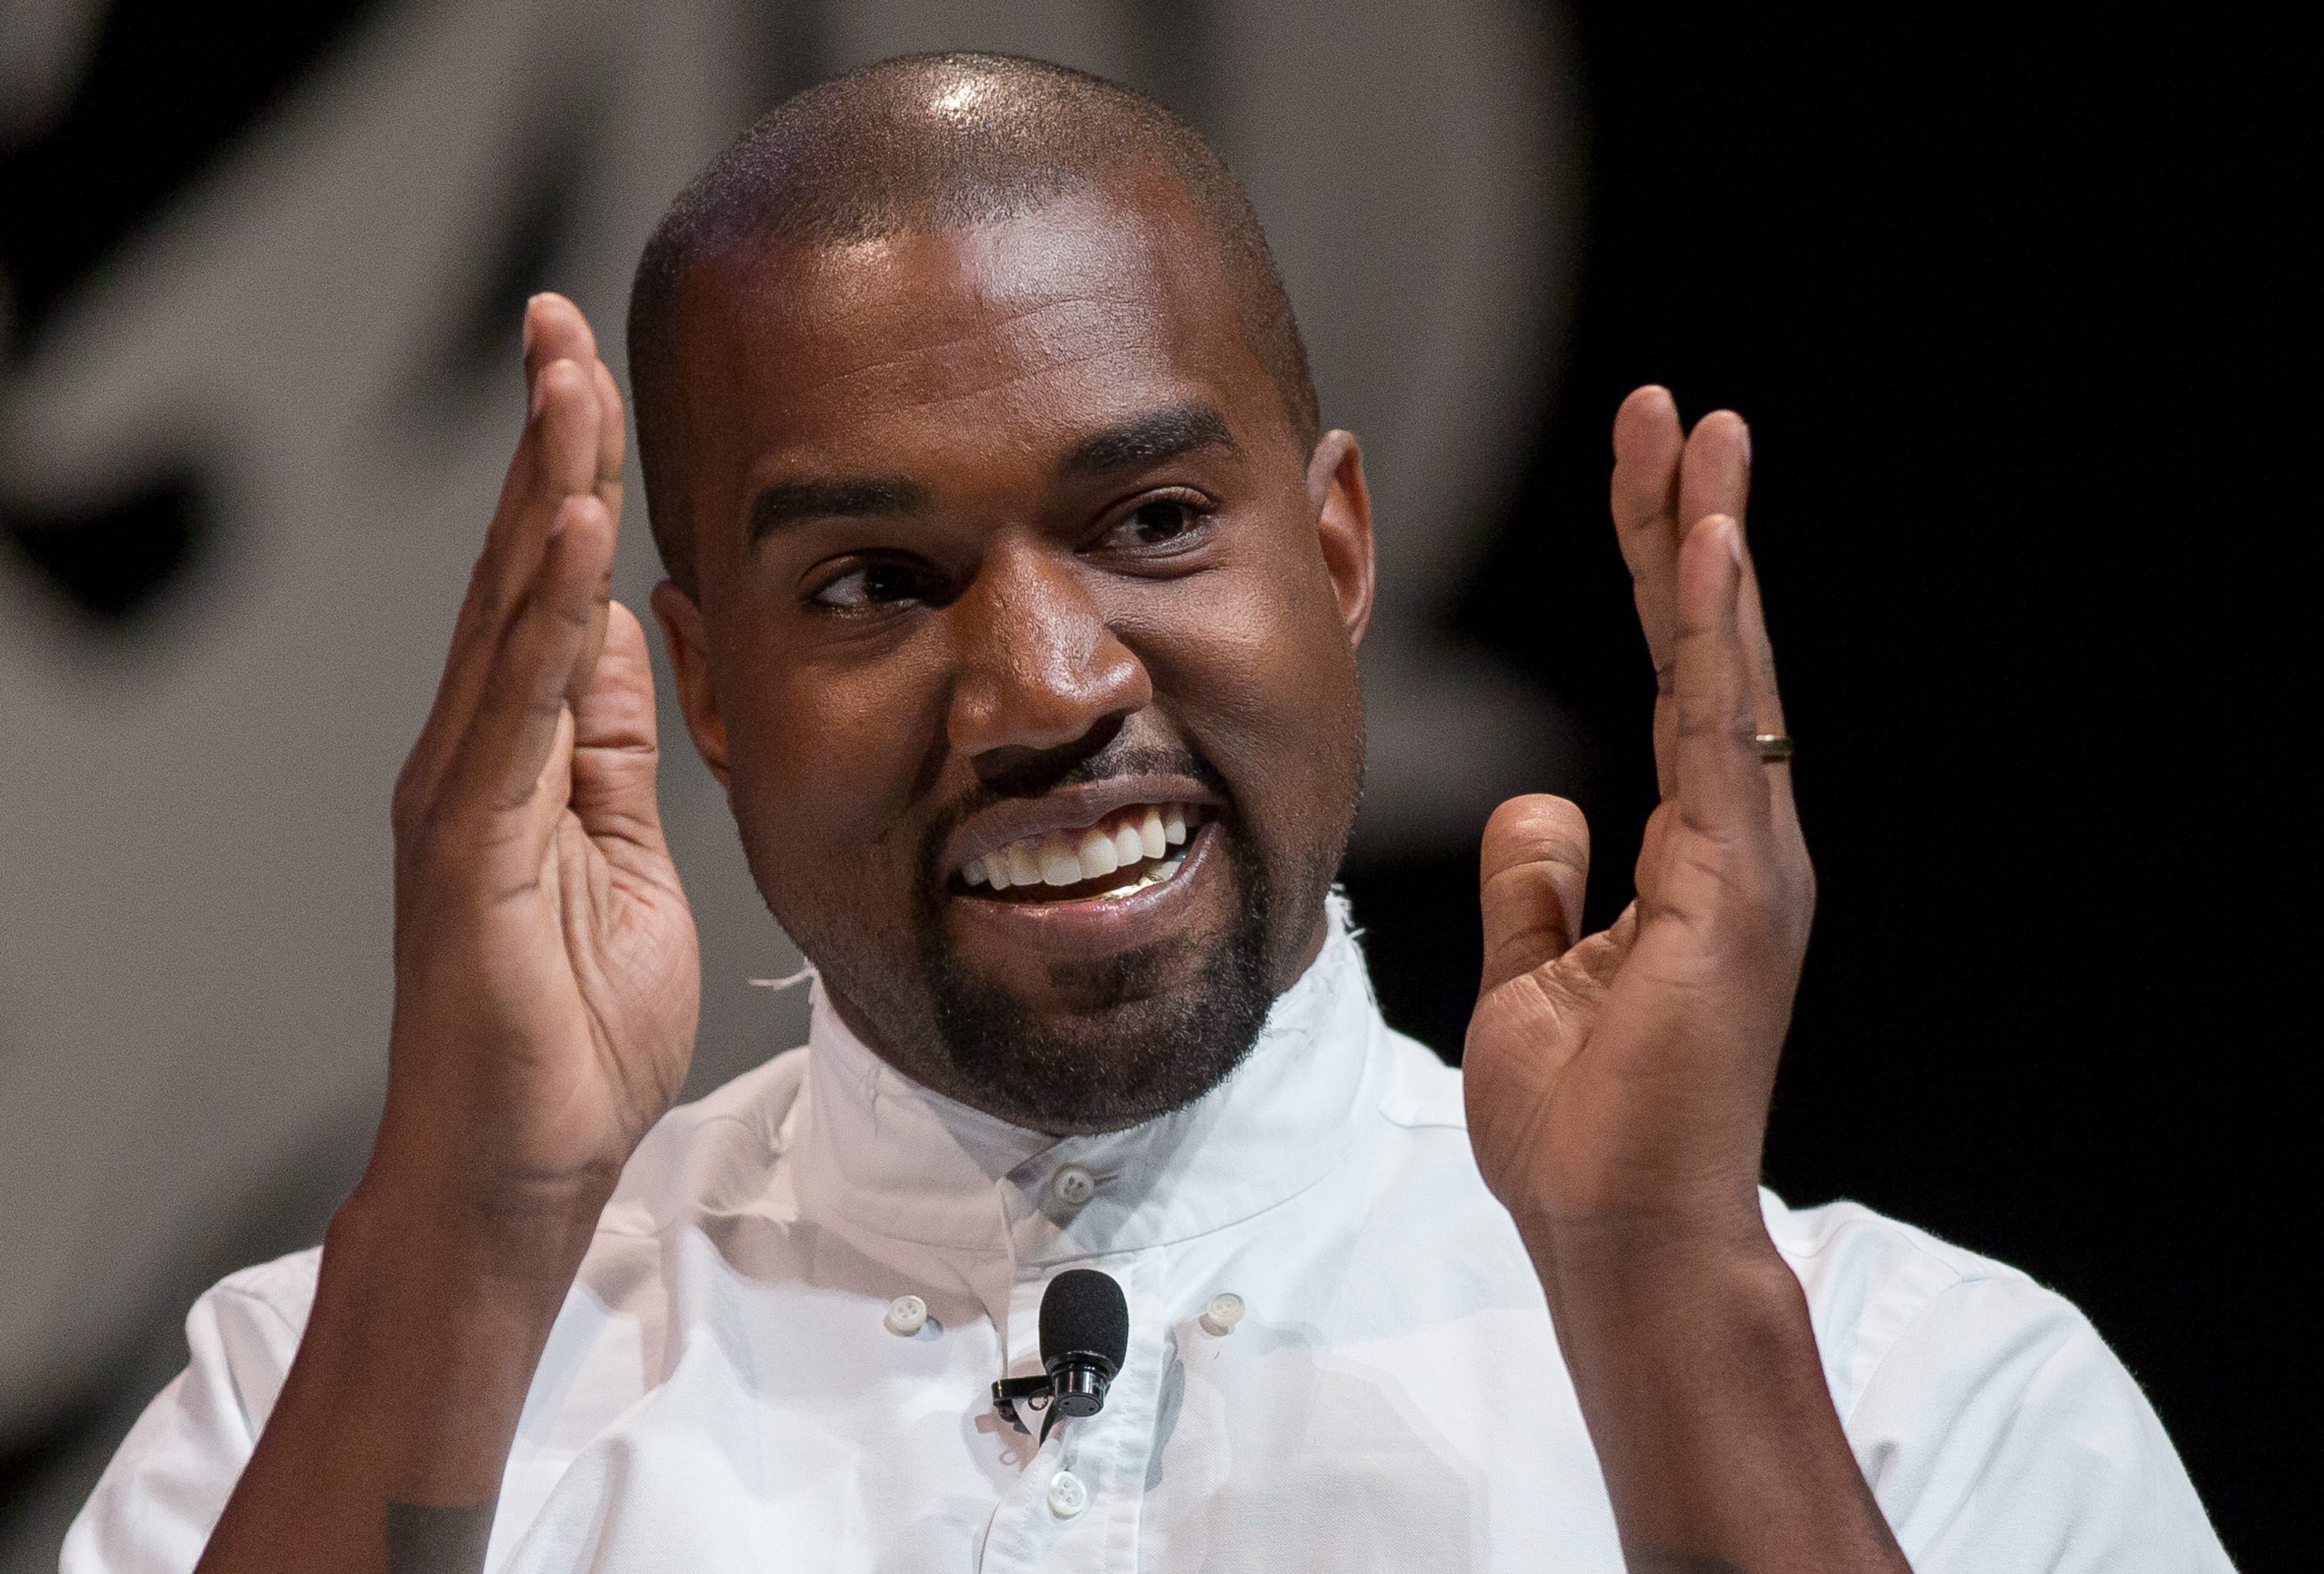 McDonald’s responde al poema de Kanye West publicado en ‘Boys Don’t Cry’